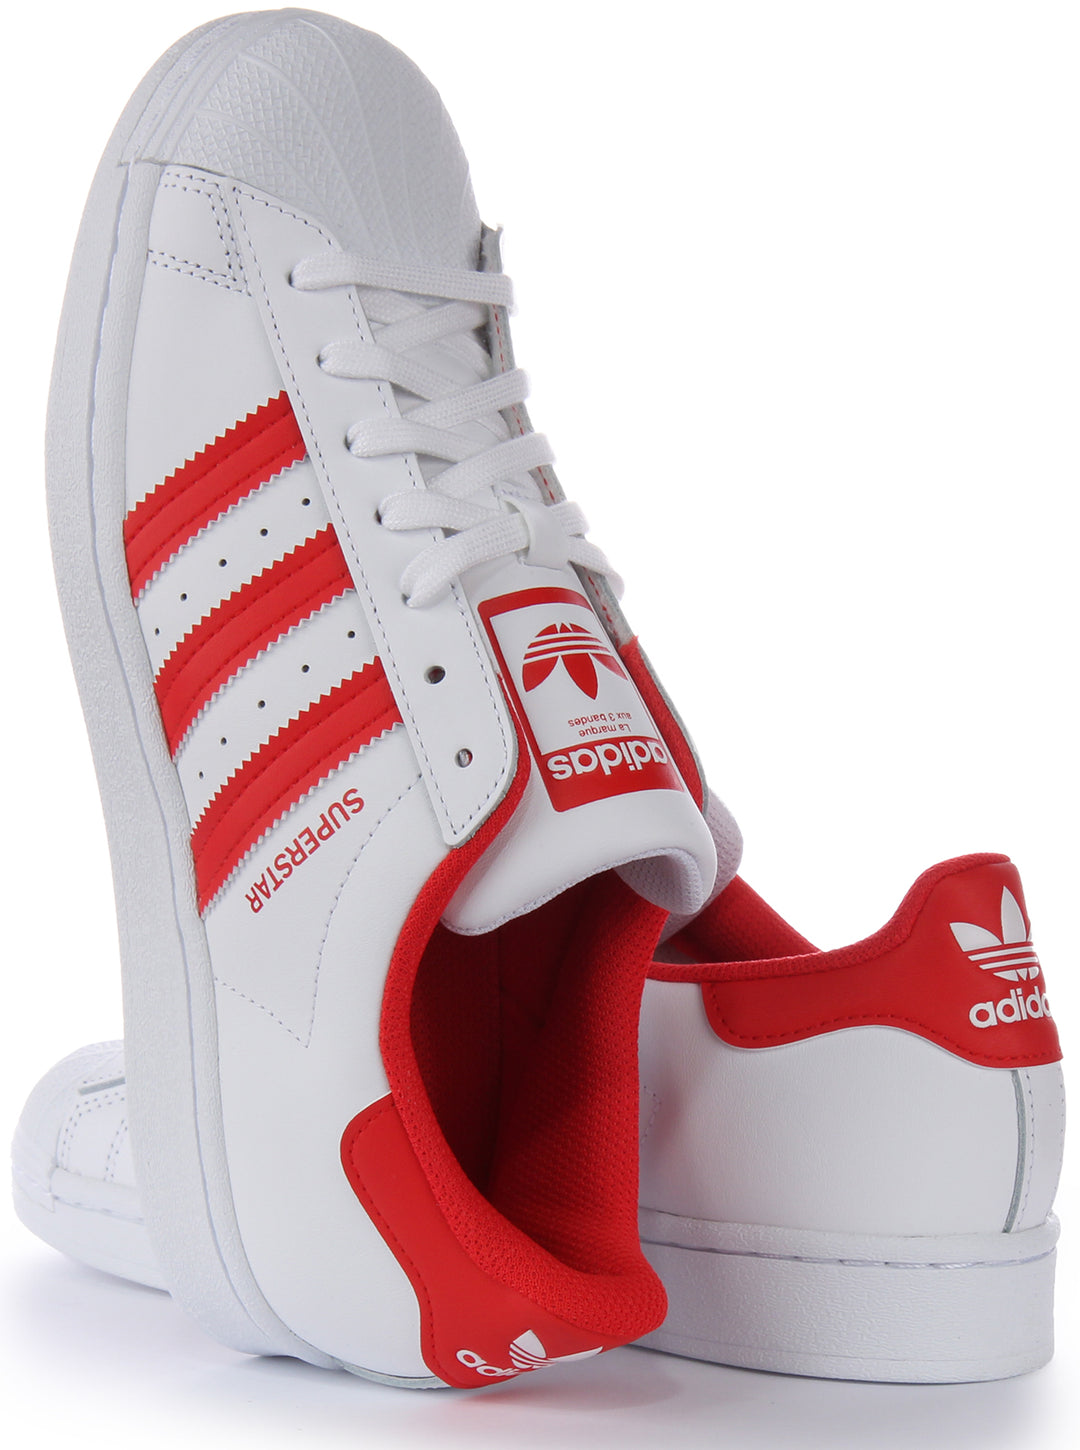 Adidas Superstar XLG Leather Zapatillas para hombres en blanco y rojo